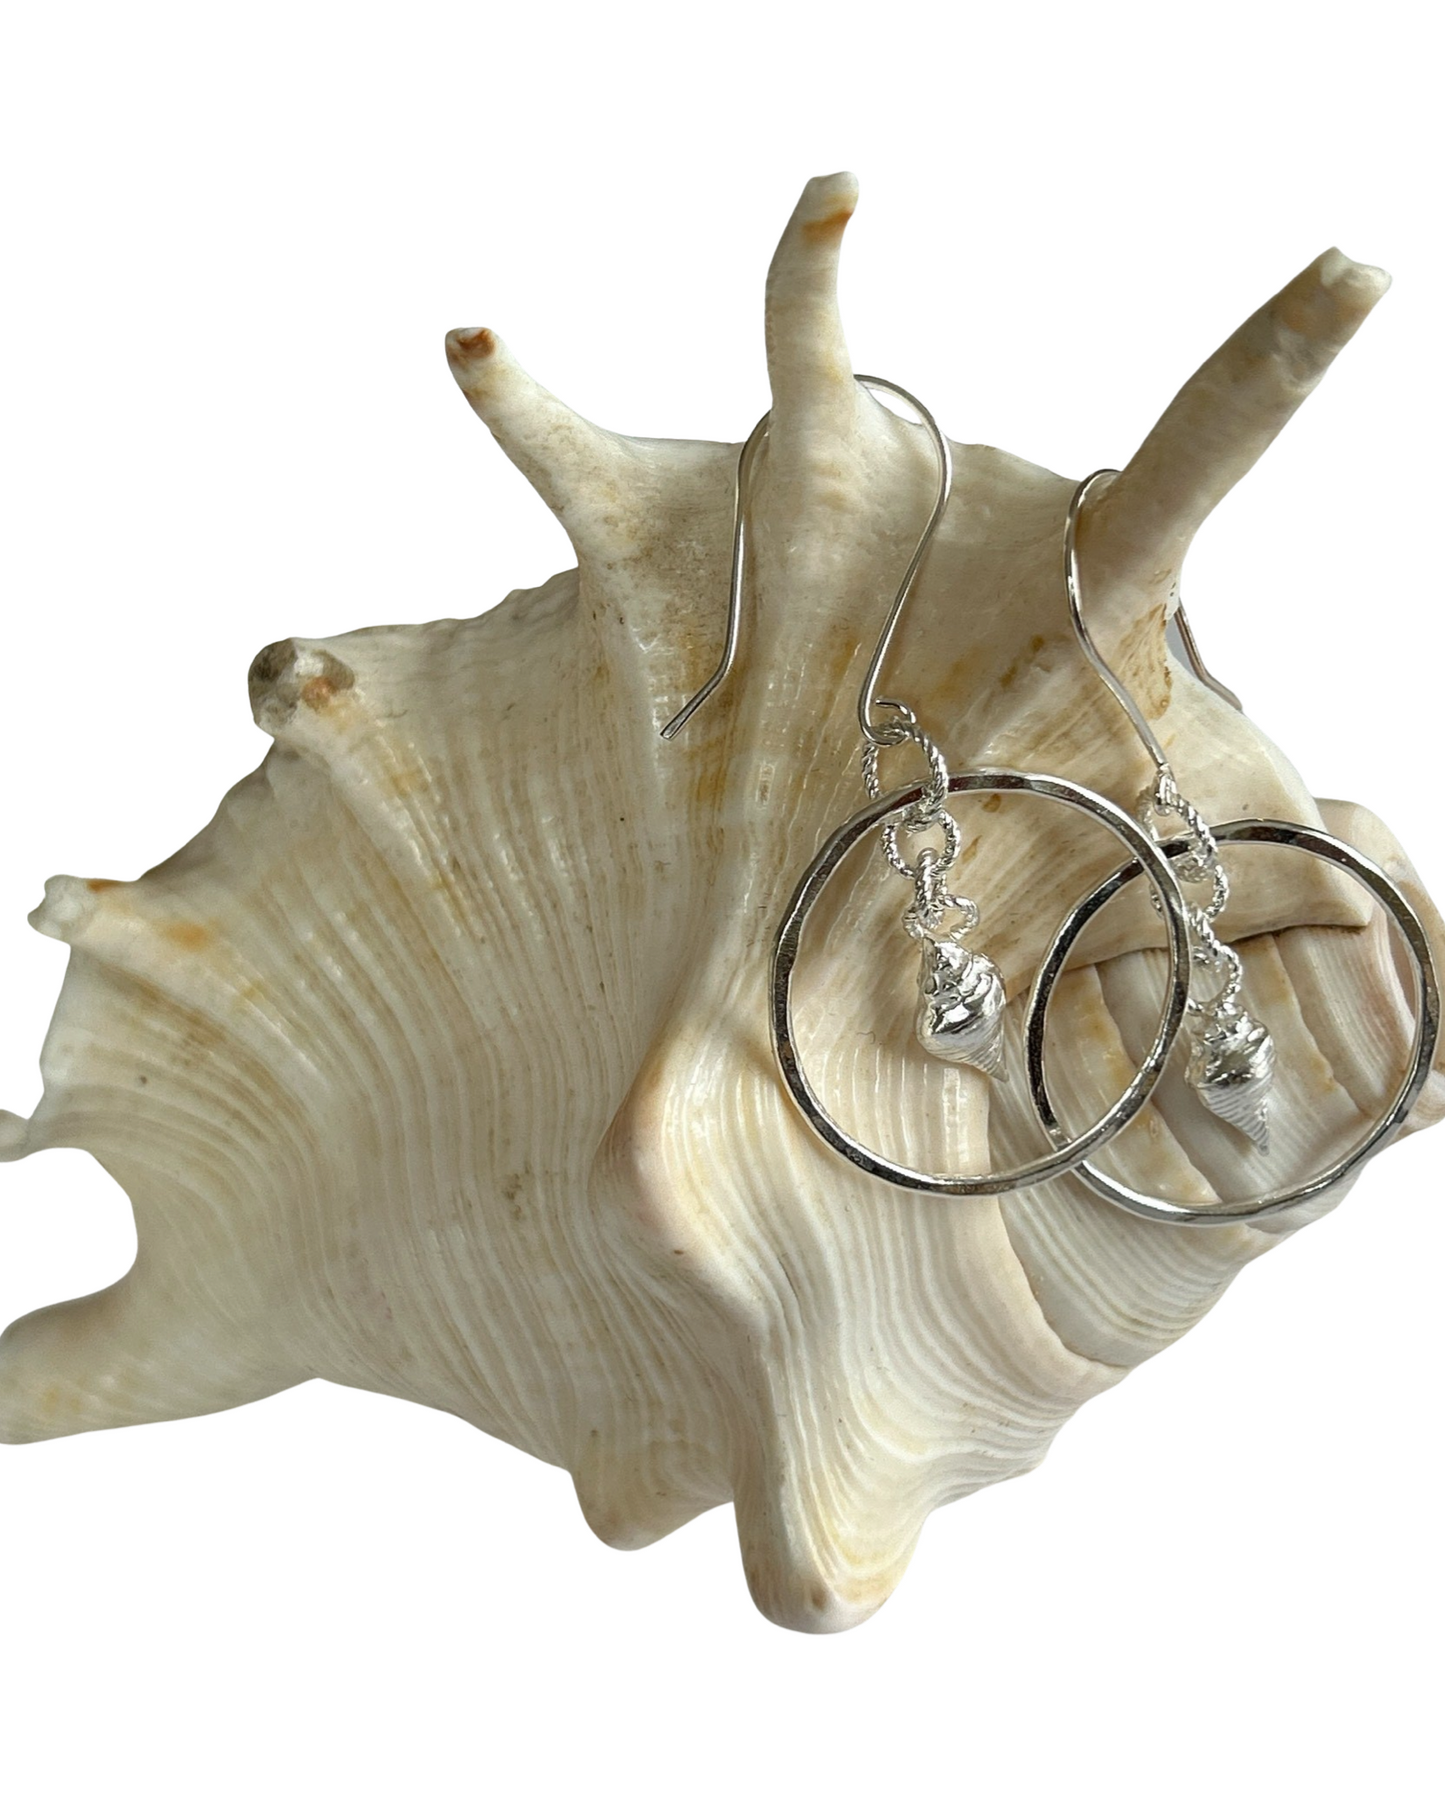 Mermaid Sea Shell Silver Hoop Earrings, - Silver Lines Jewellery